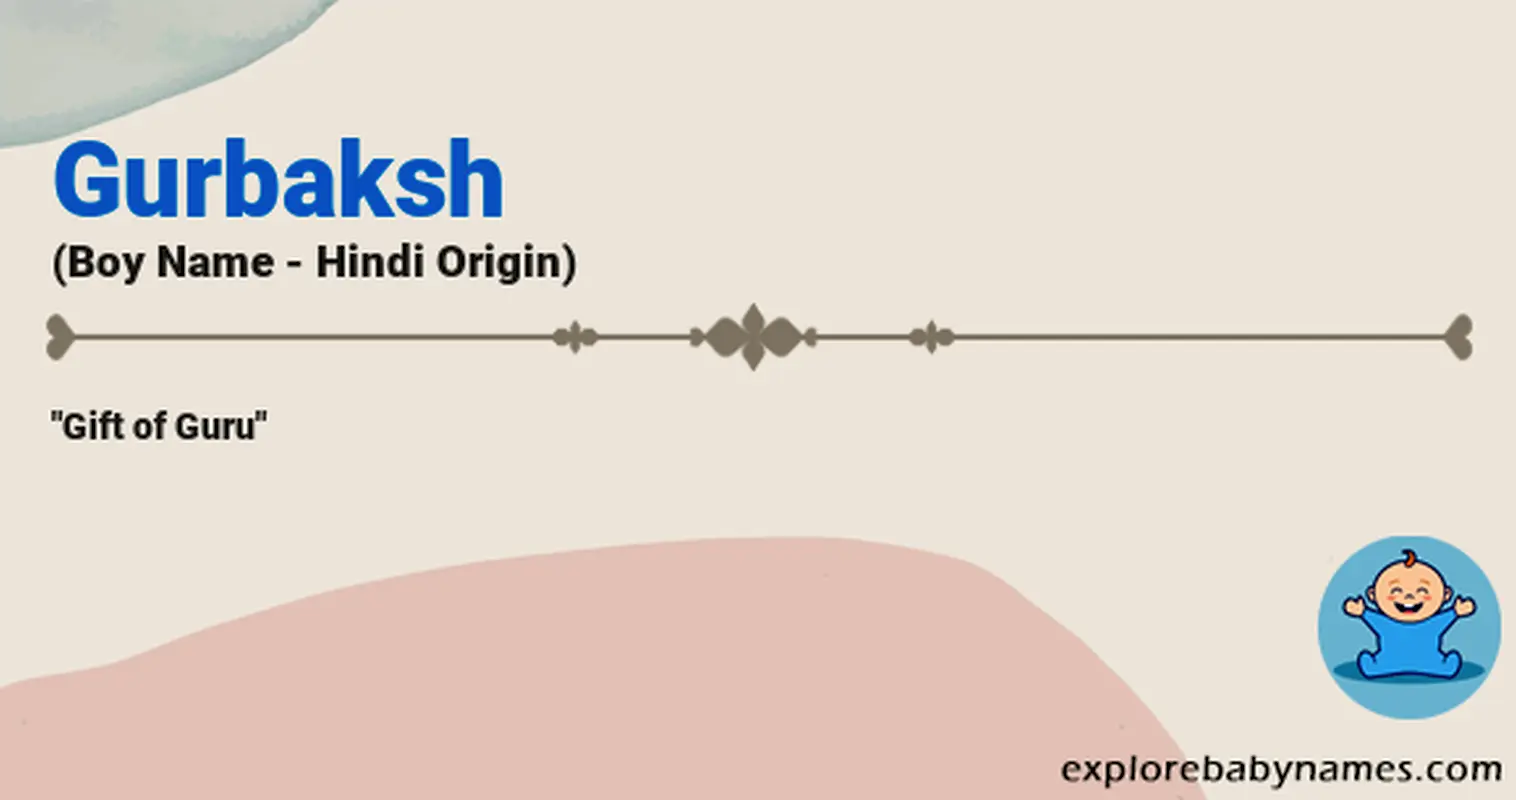 Meaning of Gurbaksh